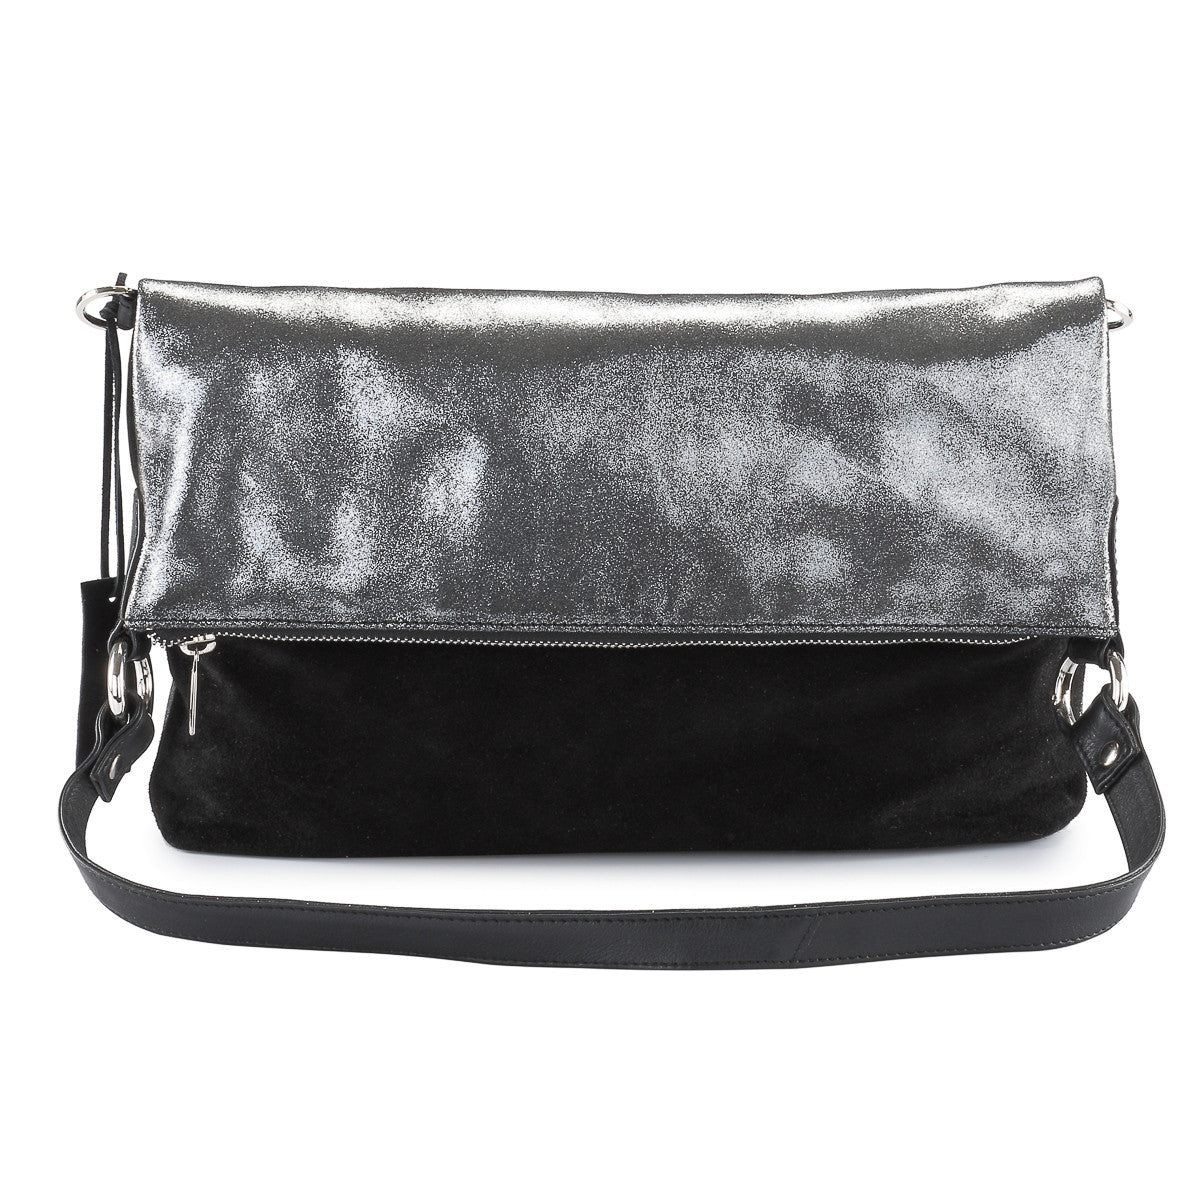 Metallic leather 4 way back pack messenger clutch bag #LB31  black